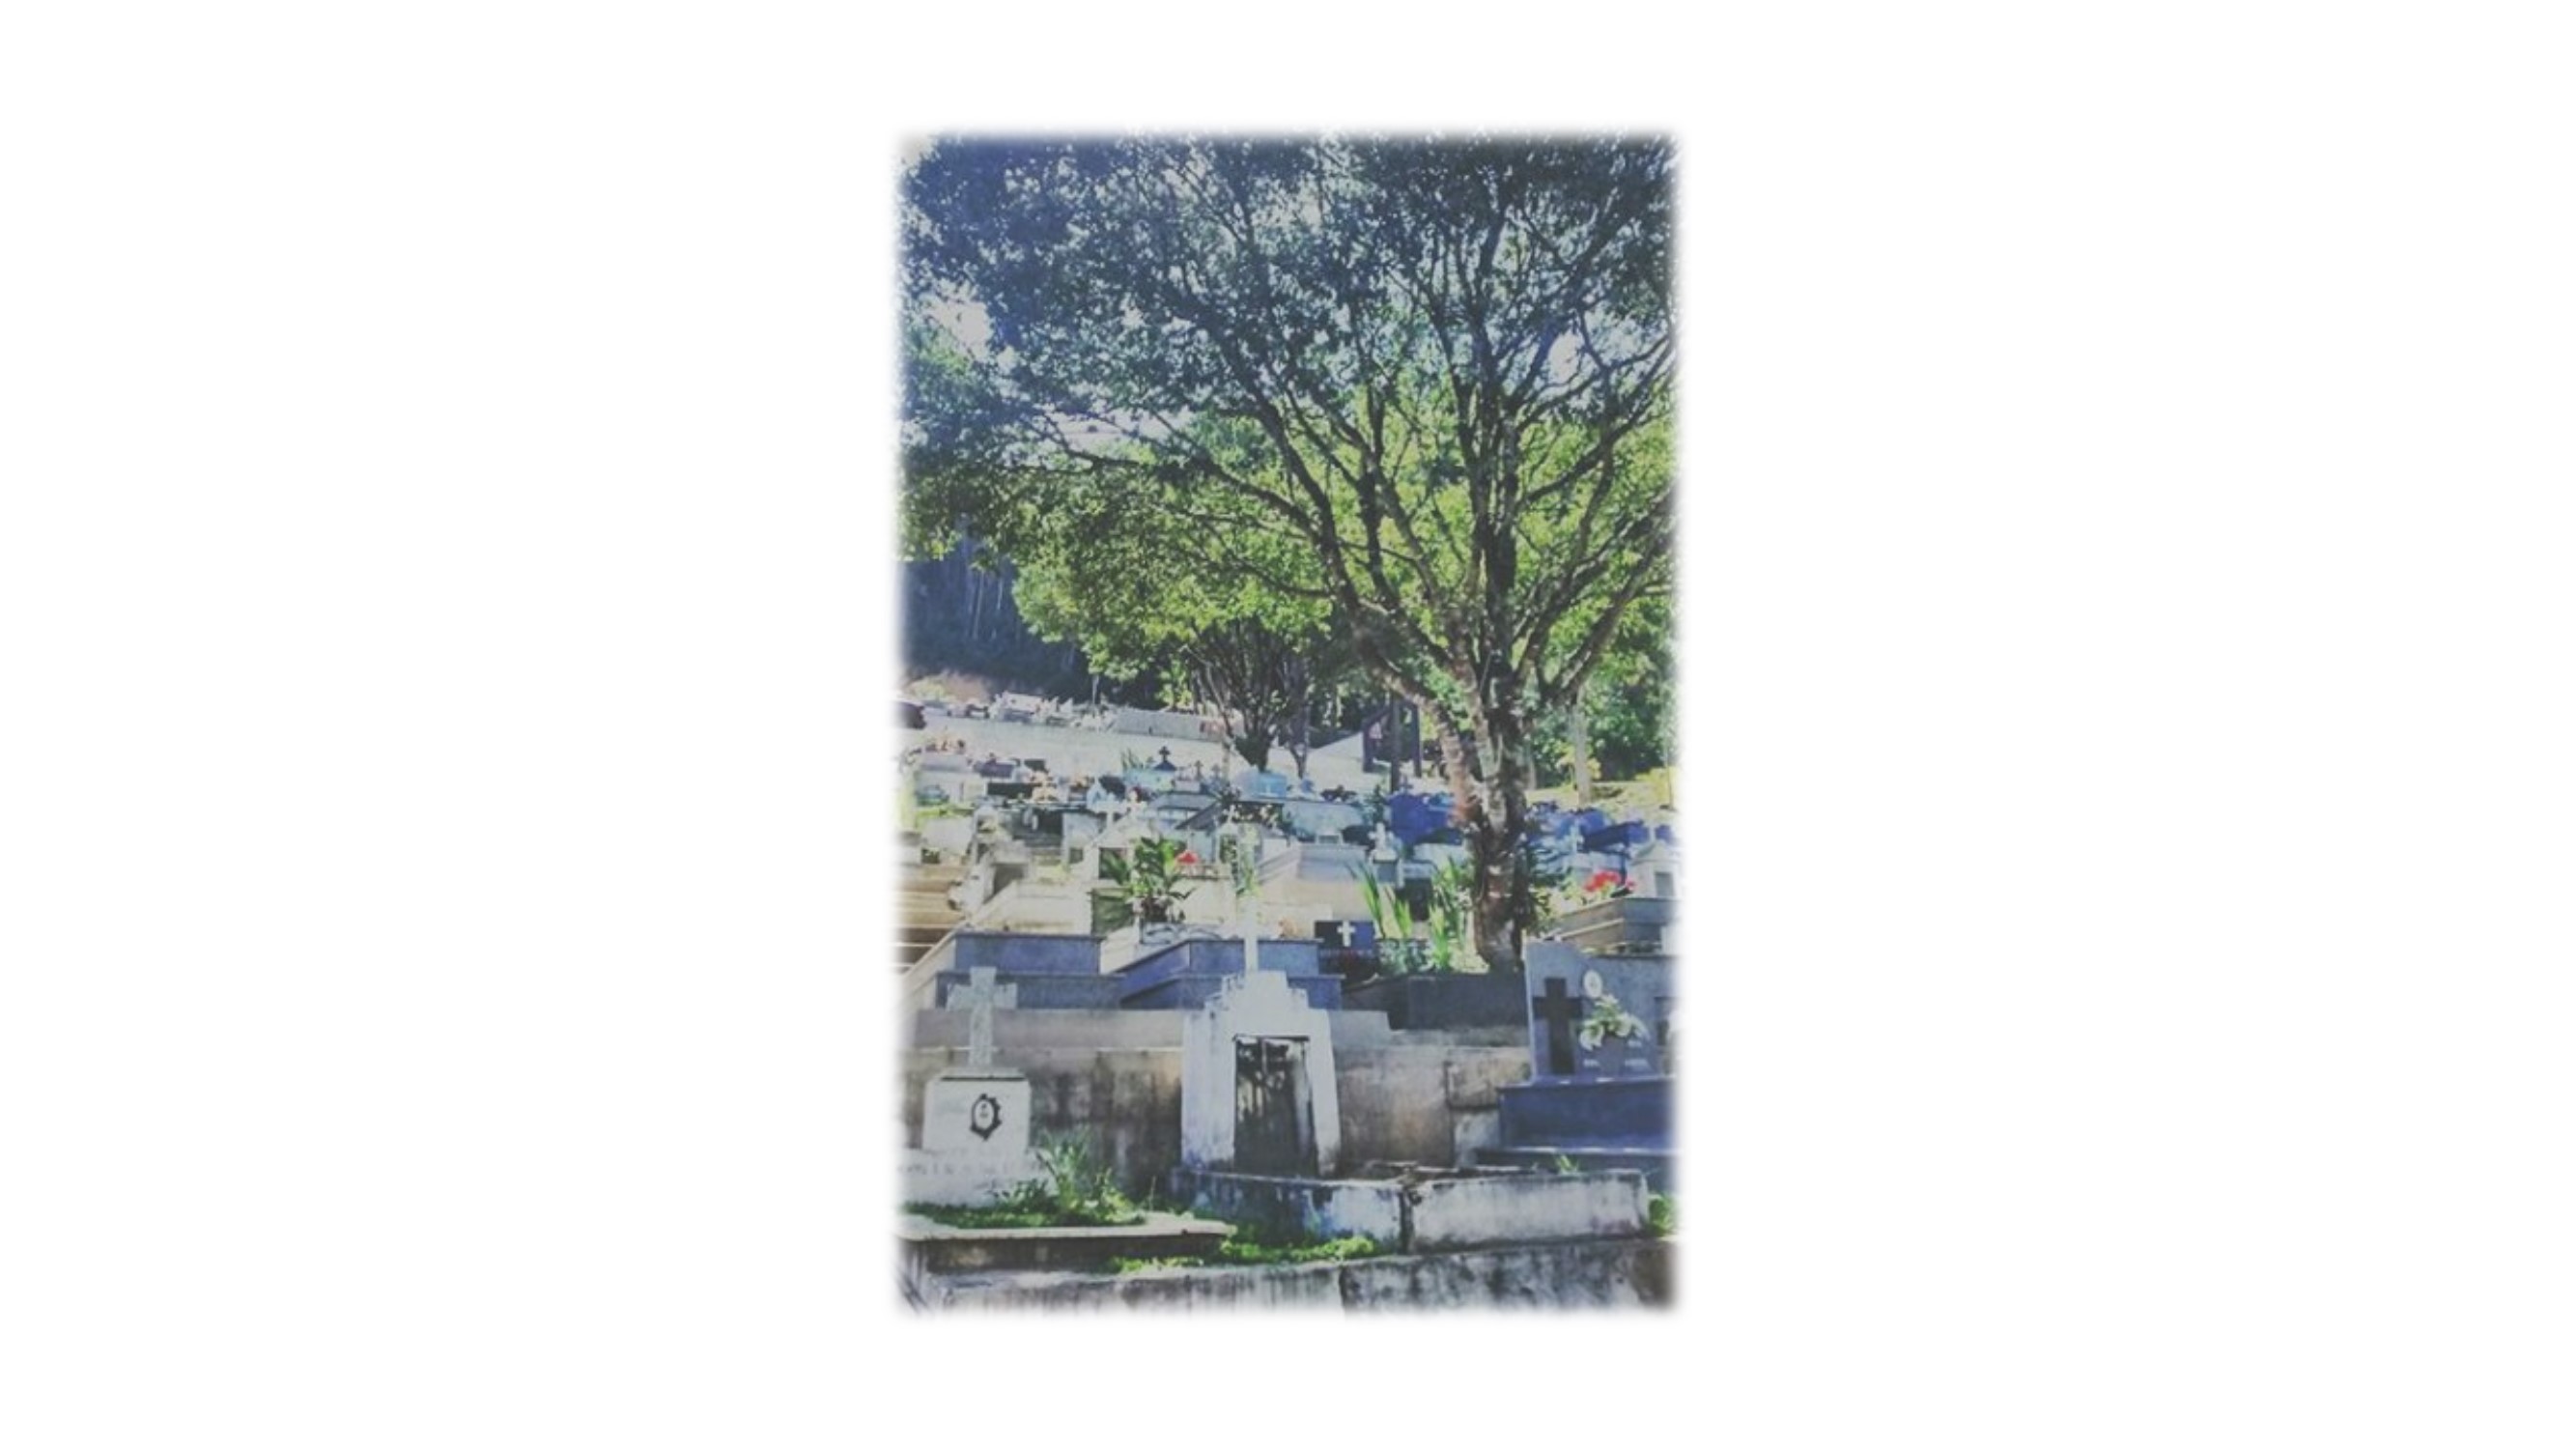 cemiterio